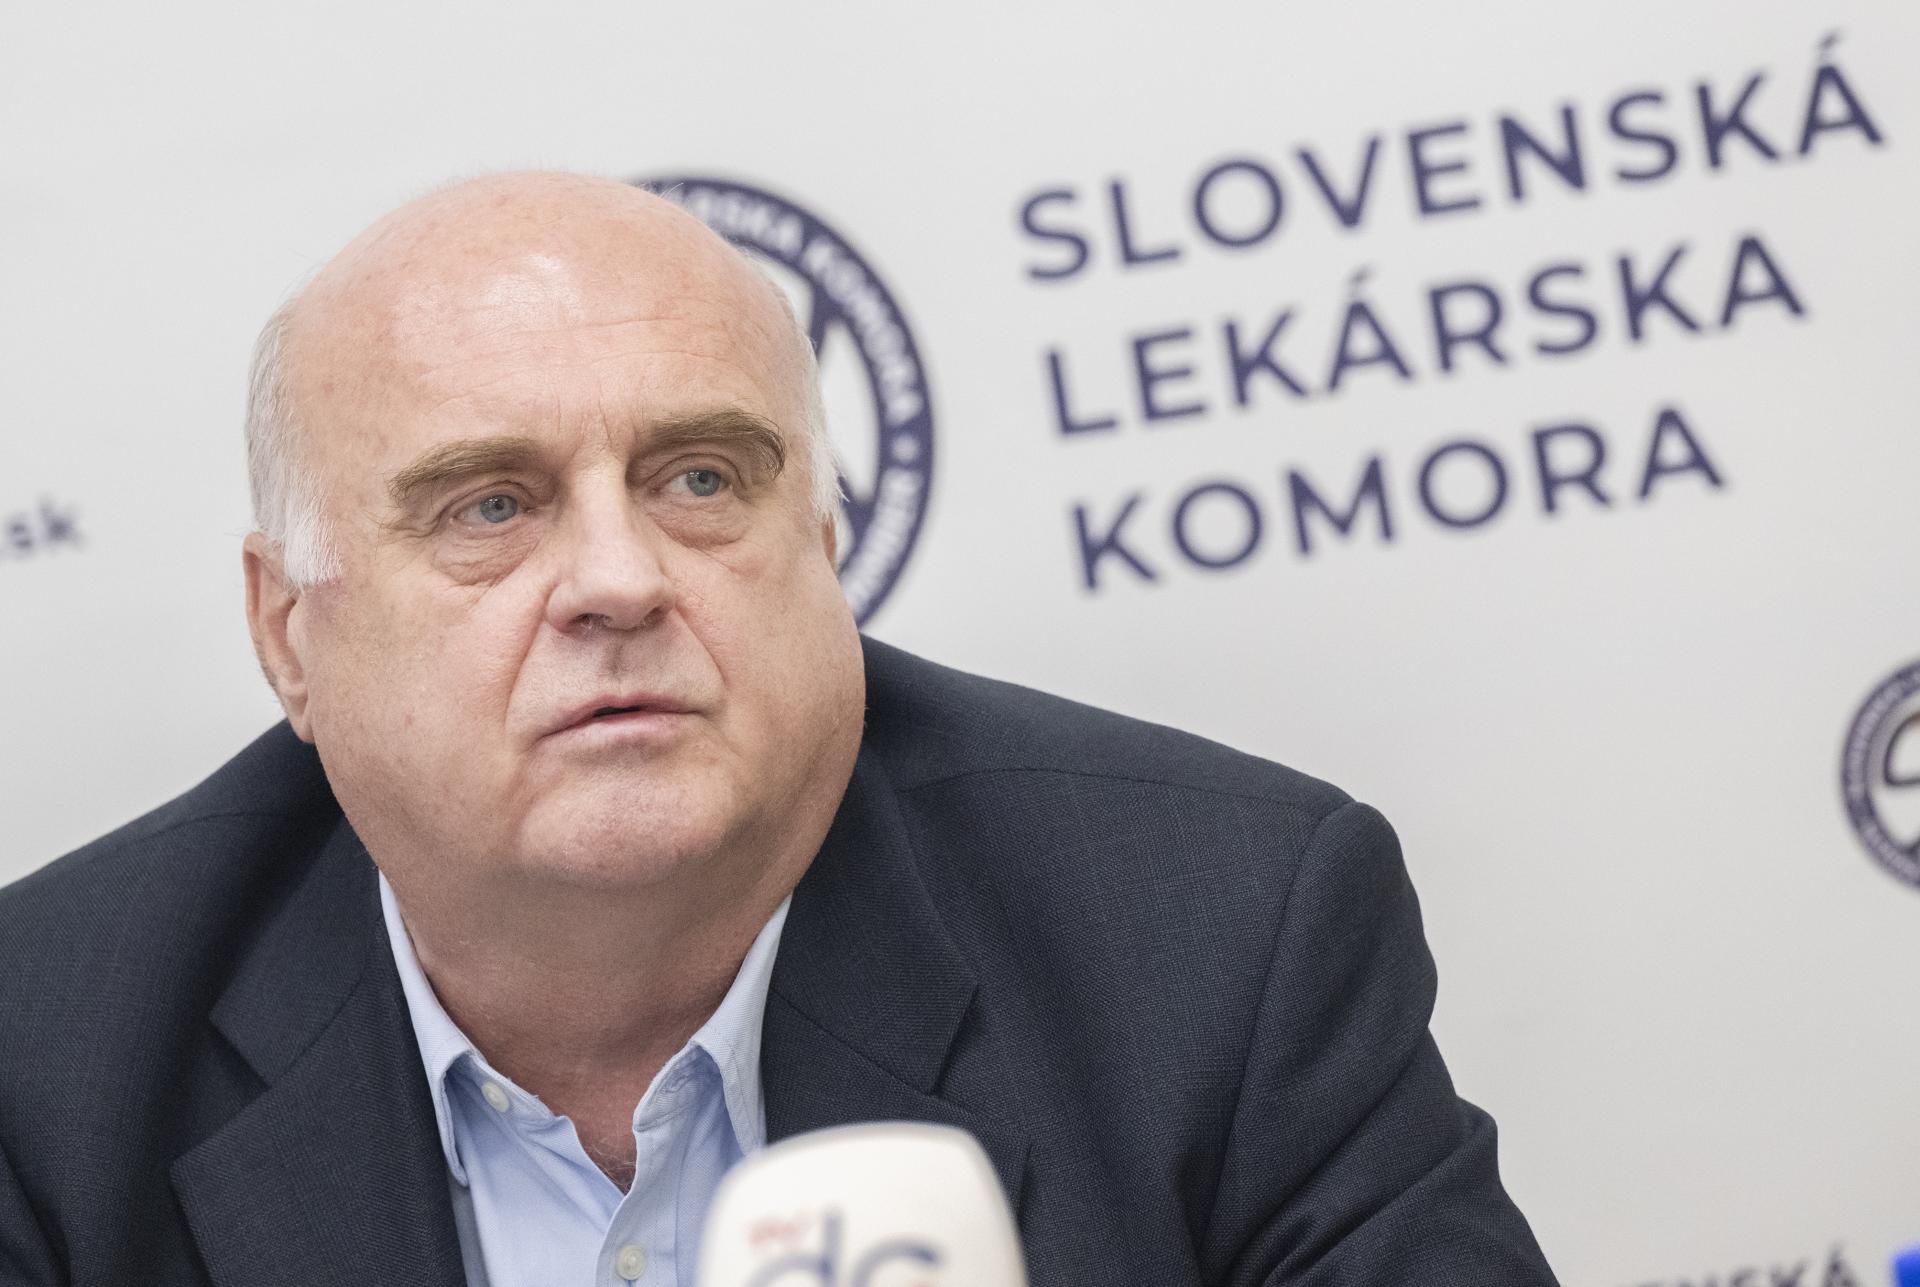 Slovenská lekárska komora víta návrh na rozpočet pre zdravotníctvo, apeluje na náhrady pre poskytovateľov